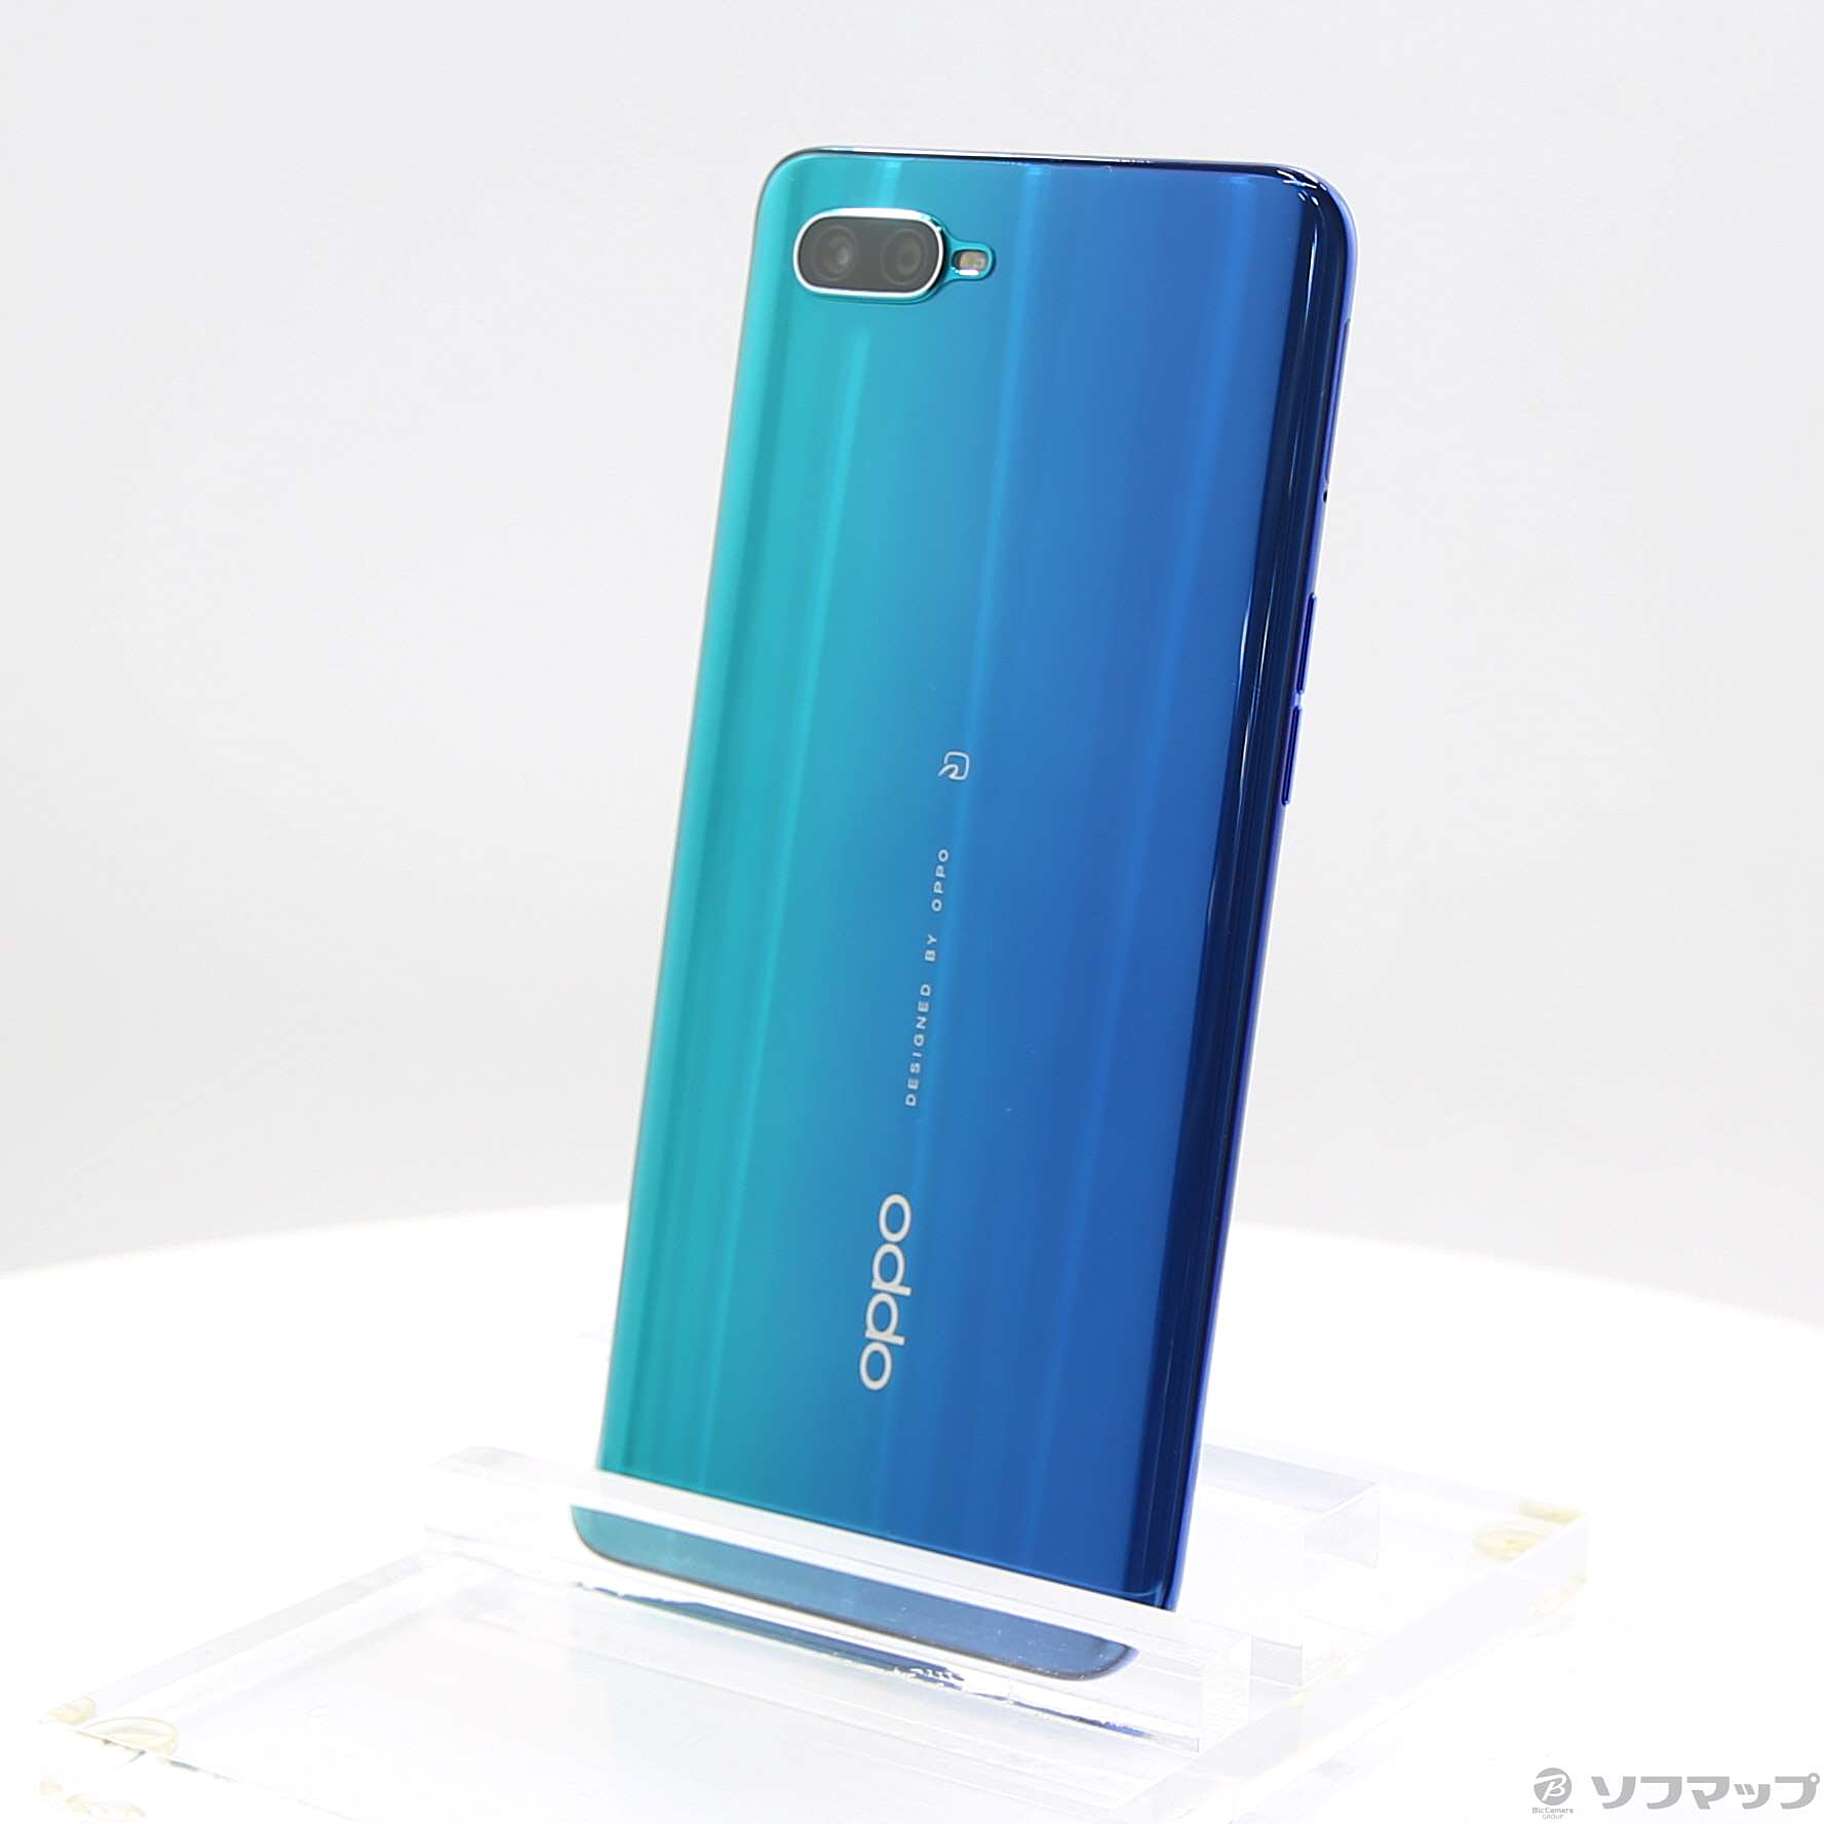 公式売上OPPO Reno A ブルー 128 GB SIMフリー スマートフォン本体